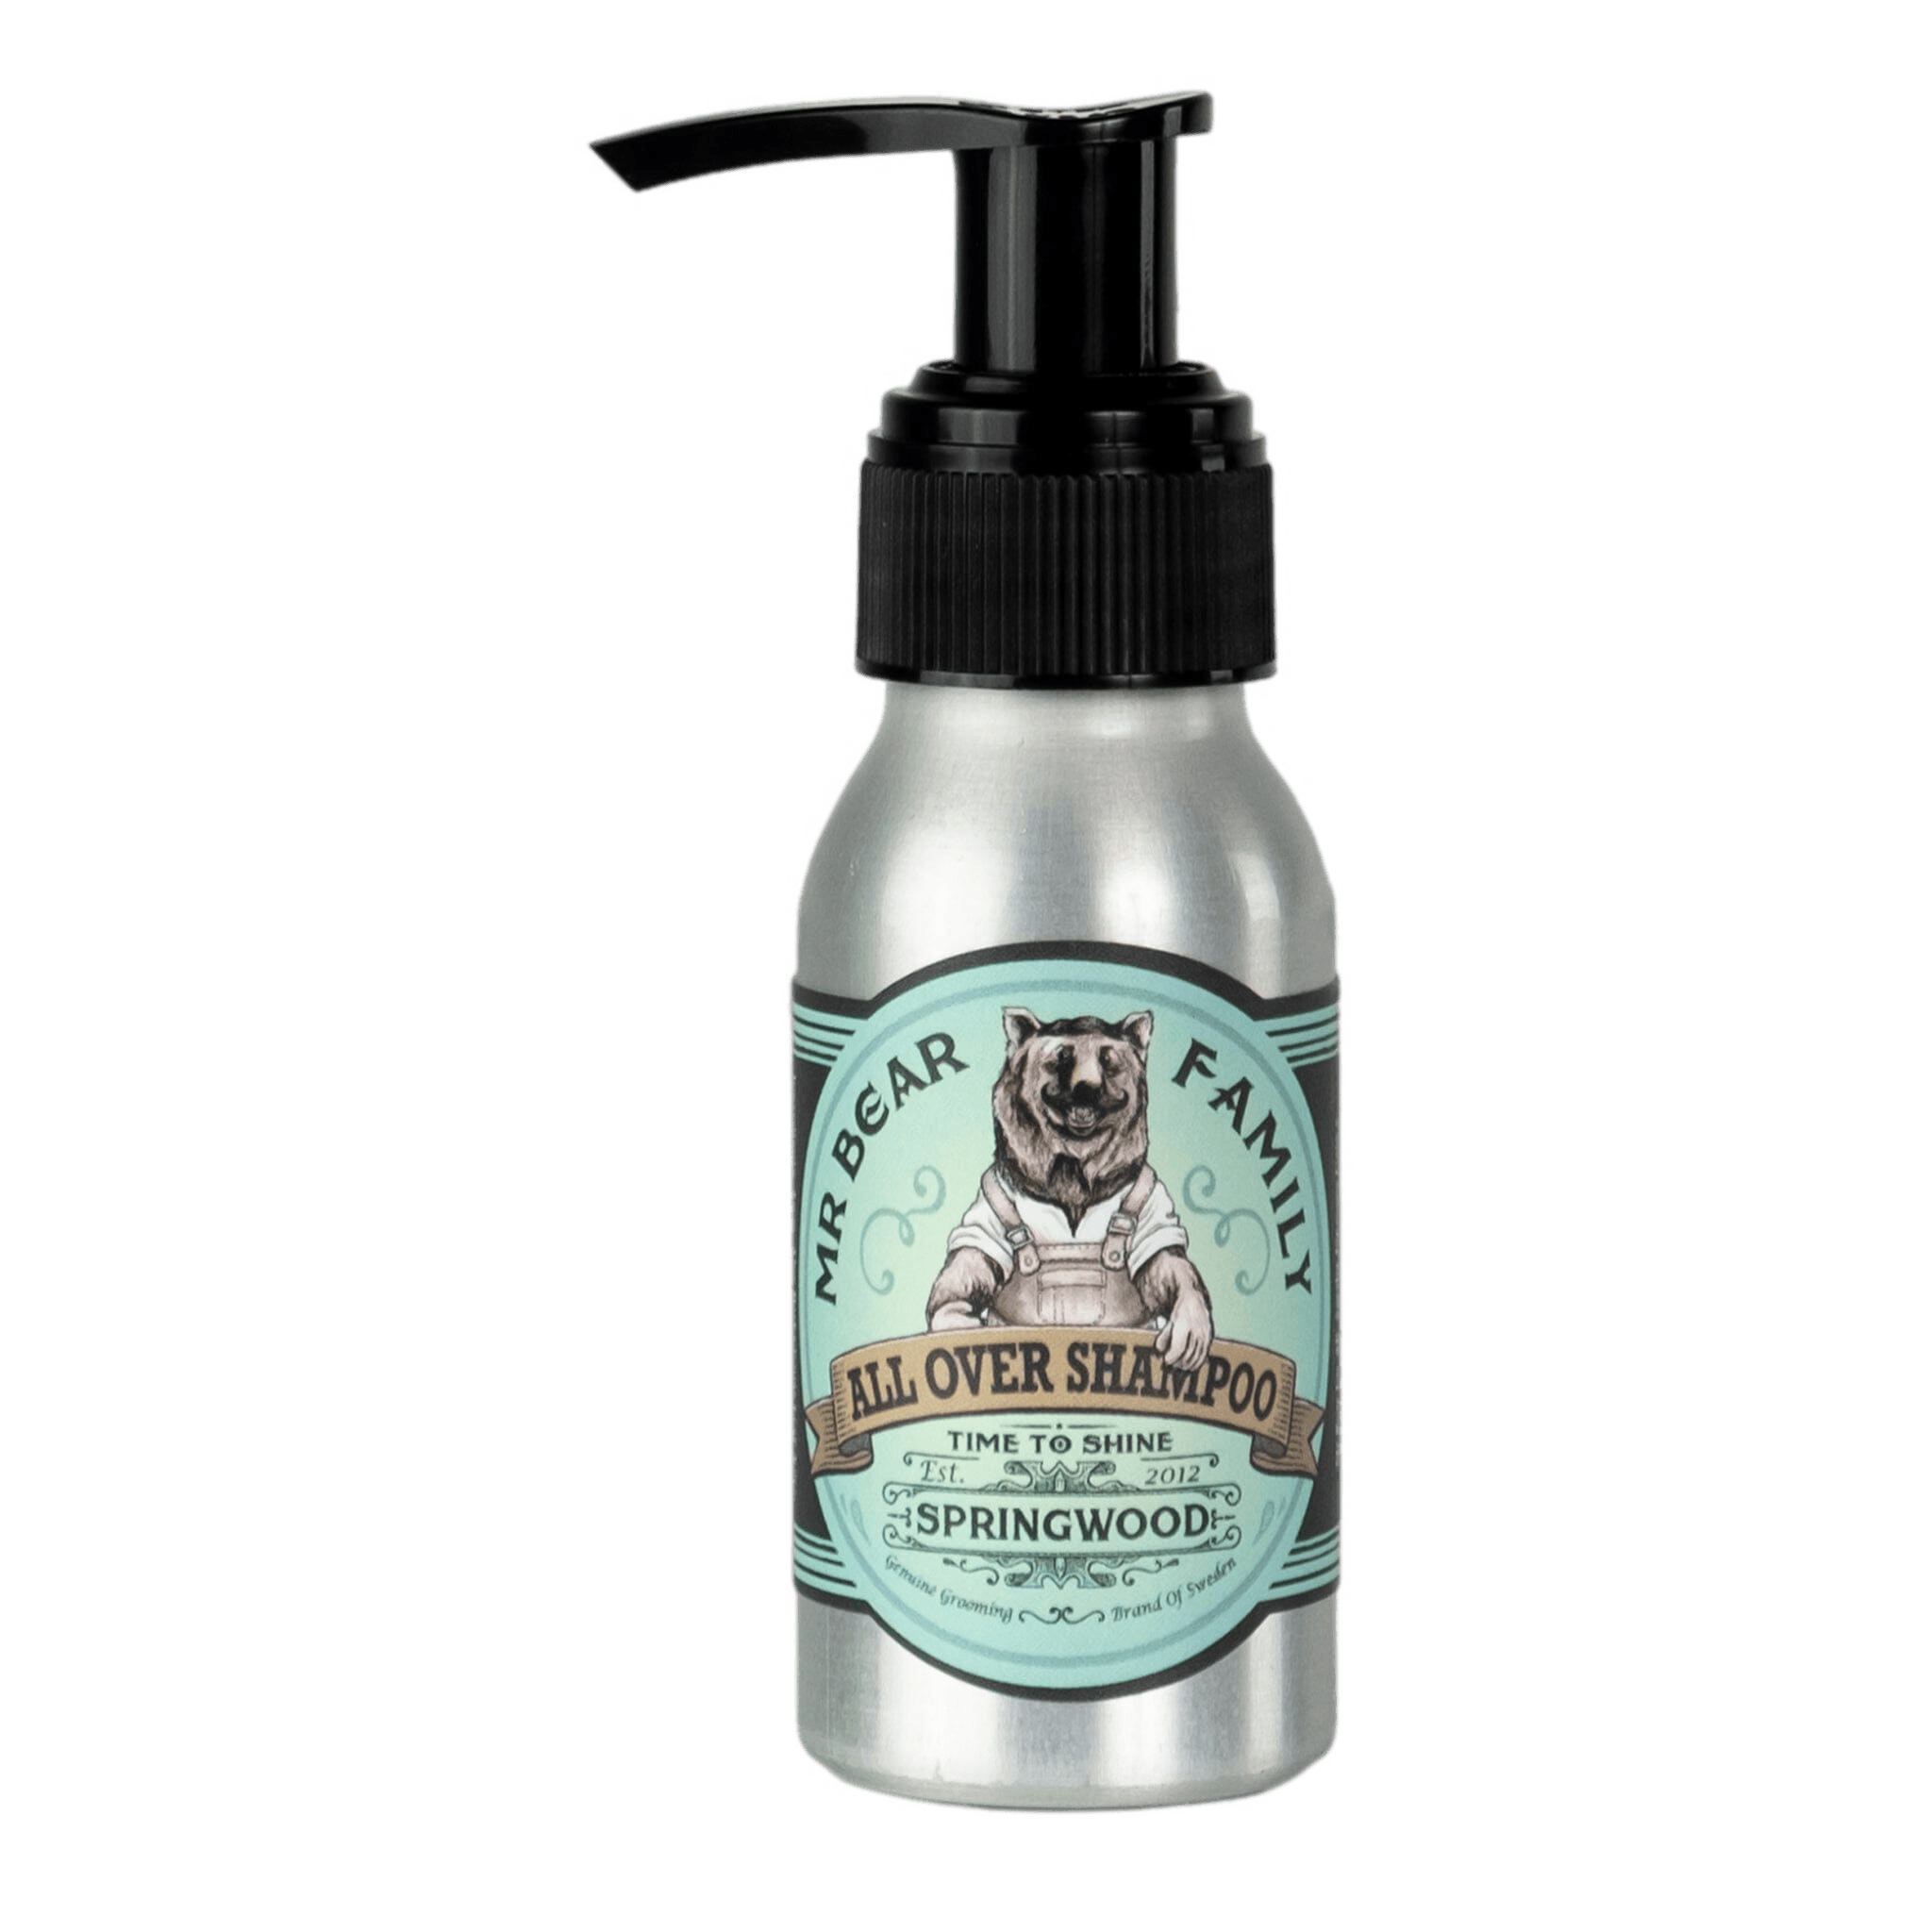 Mr Bear Family All Over Shampoo hår- og kroppsvask - Springwood Reisestørrelse - 50 ml